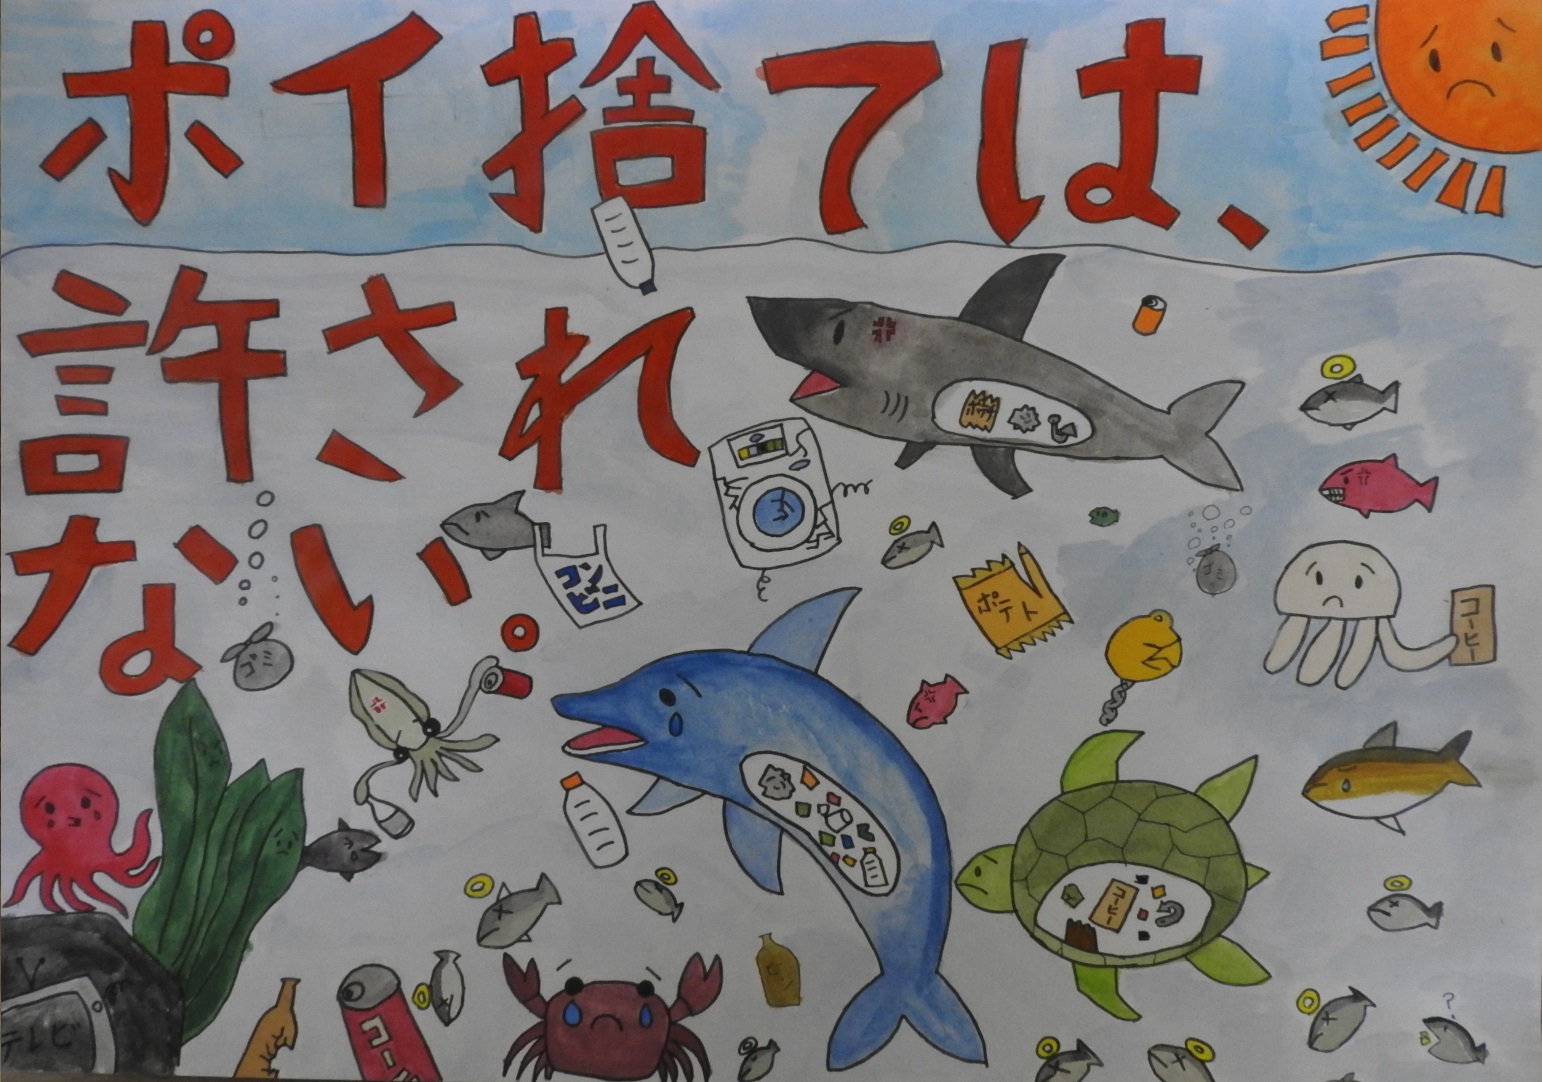 海の生き物がごみを食べてしまった絵に「ポイ捨ては、許されない。」と書かれたポスター